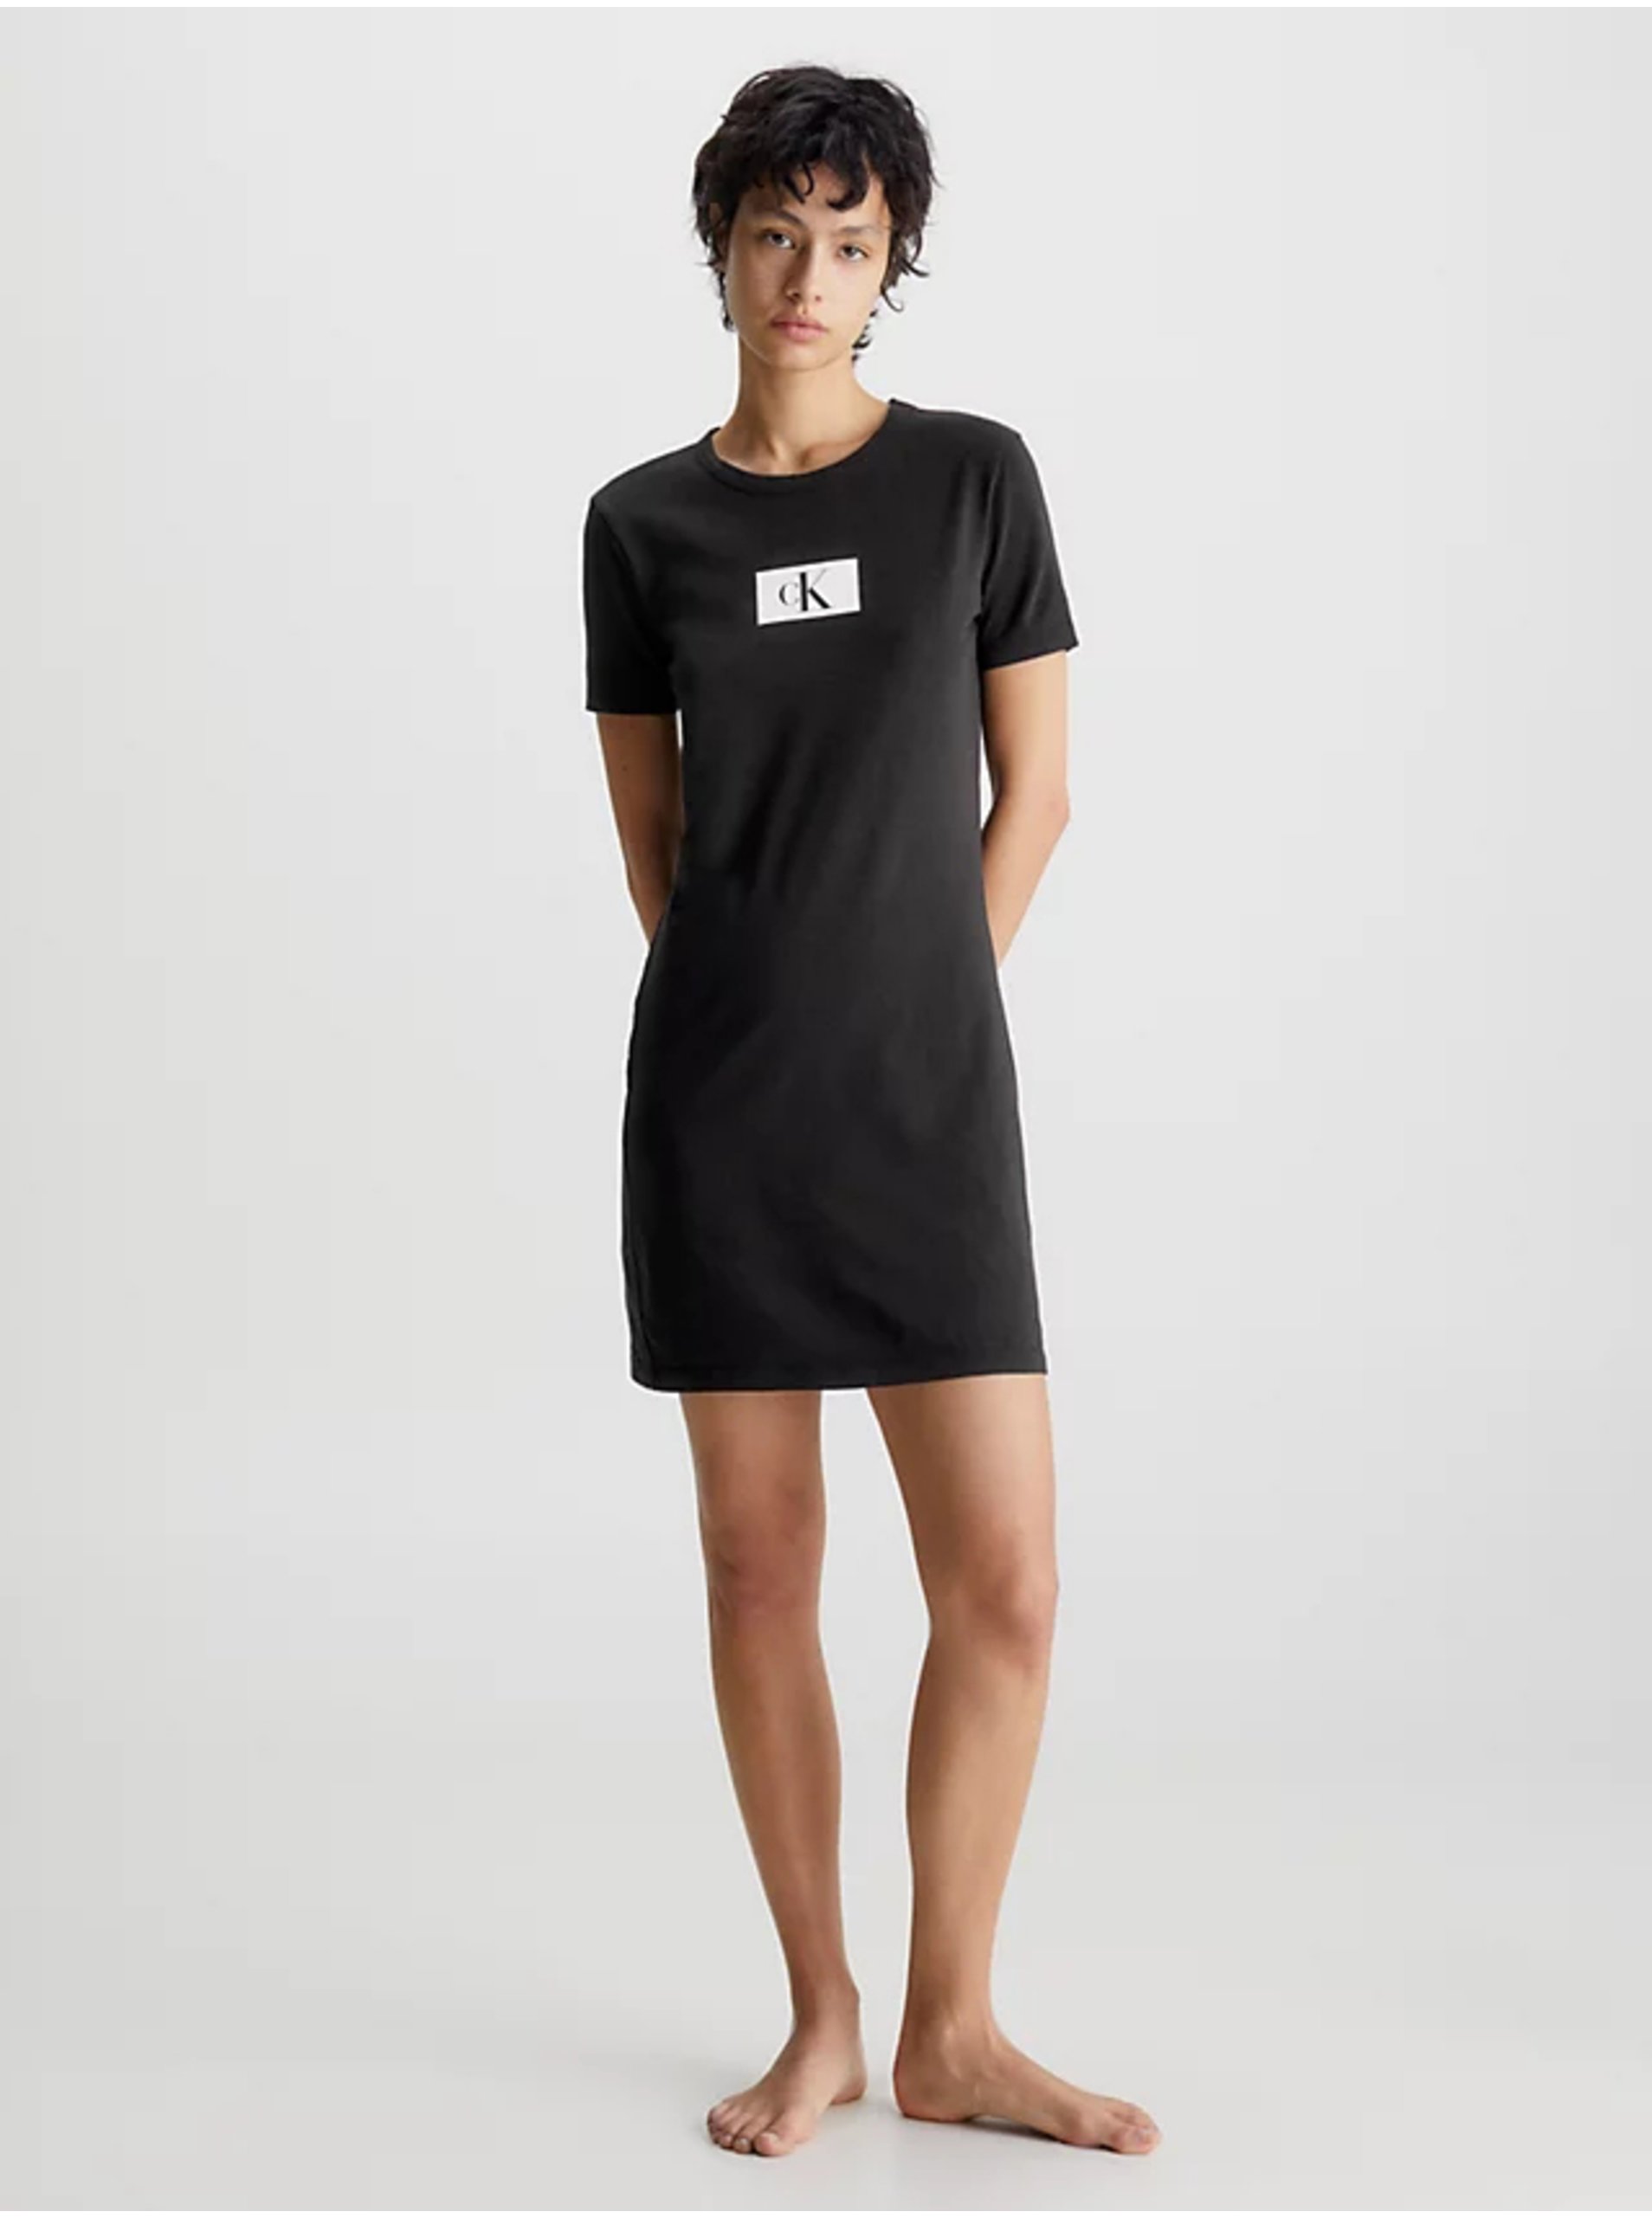 Calvin Klein Underwear Black Women's Nightgown - Women